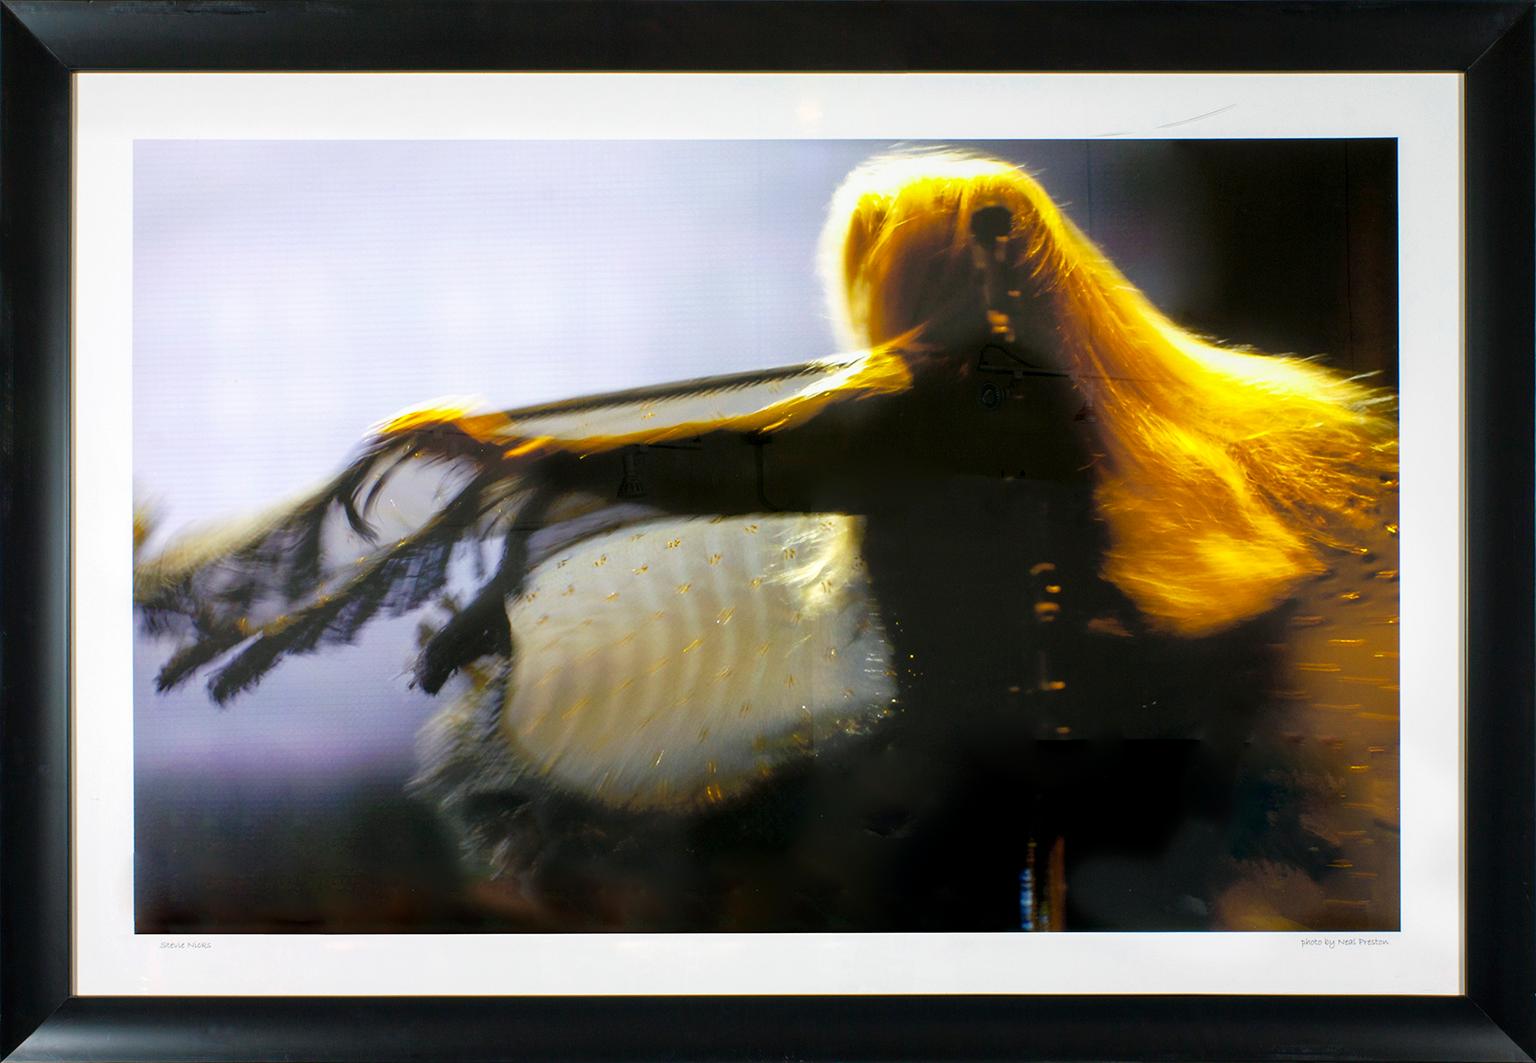 Photographie encadrée "Stevie Nicks" par Neal Preston. Taille de l'image : 33 1/4 x 53 1/4 "Stevie Nicks" écrit à la main dans le coin inférieur gauche. "Photo by Neal Preston" écrit à la main dans le coin inférieur droit. Cette photo a été